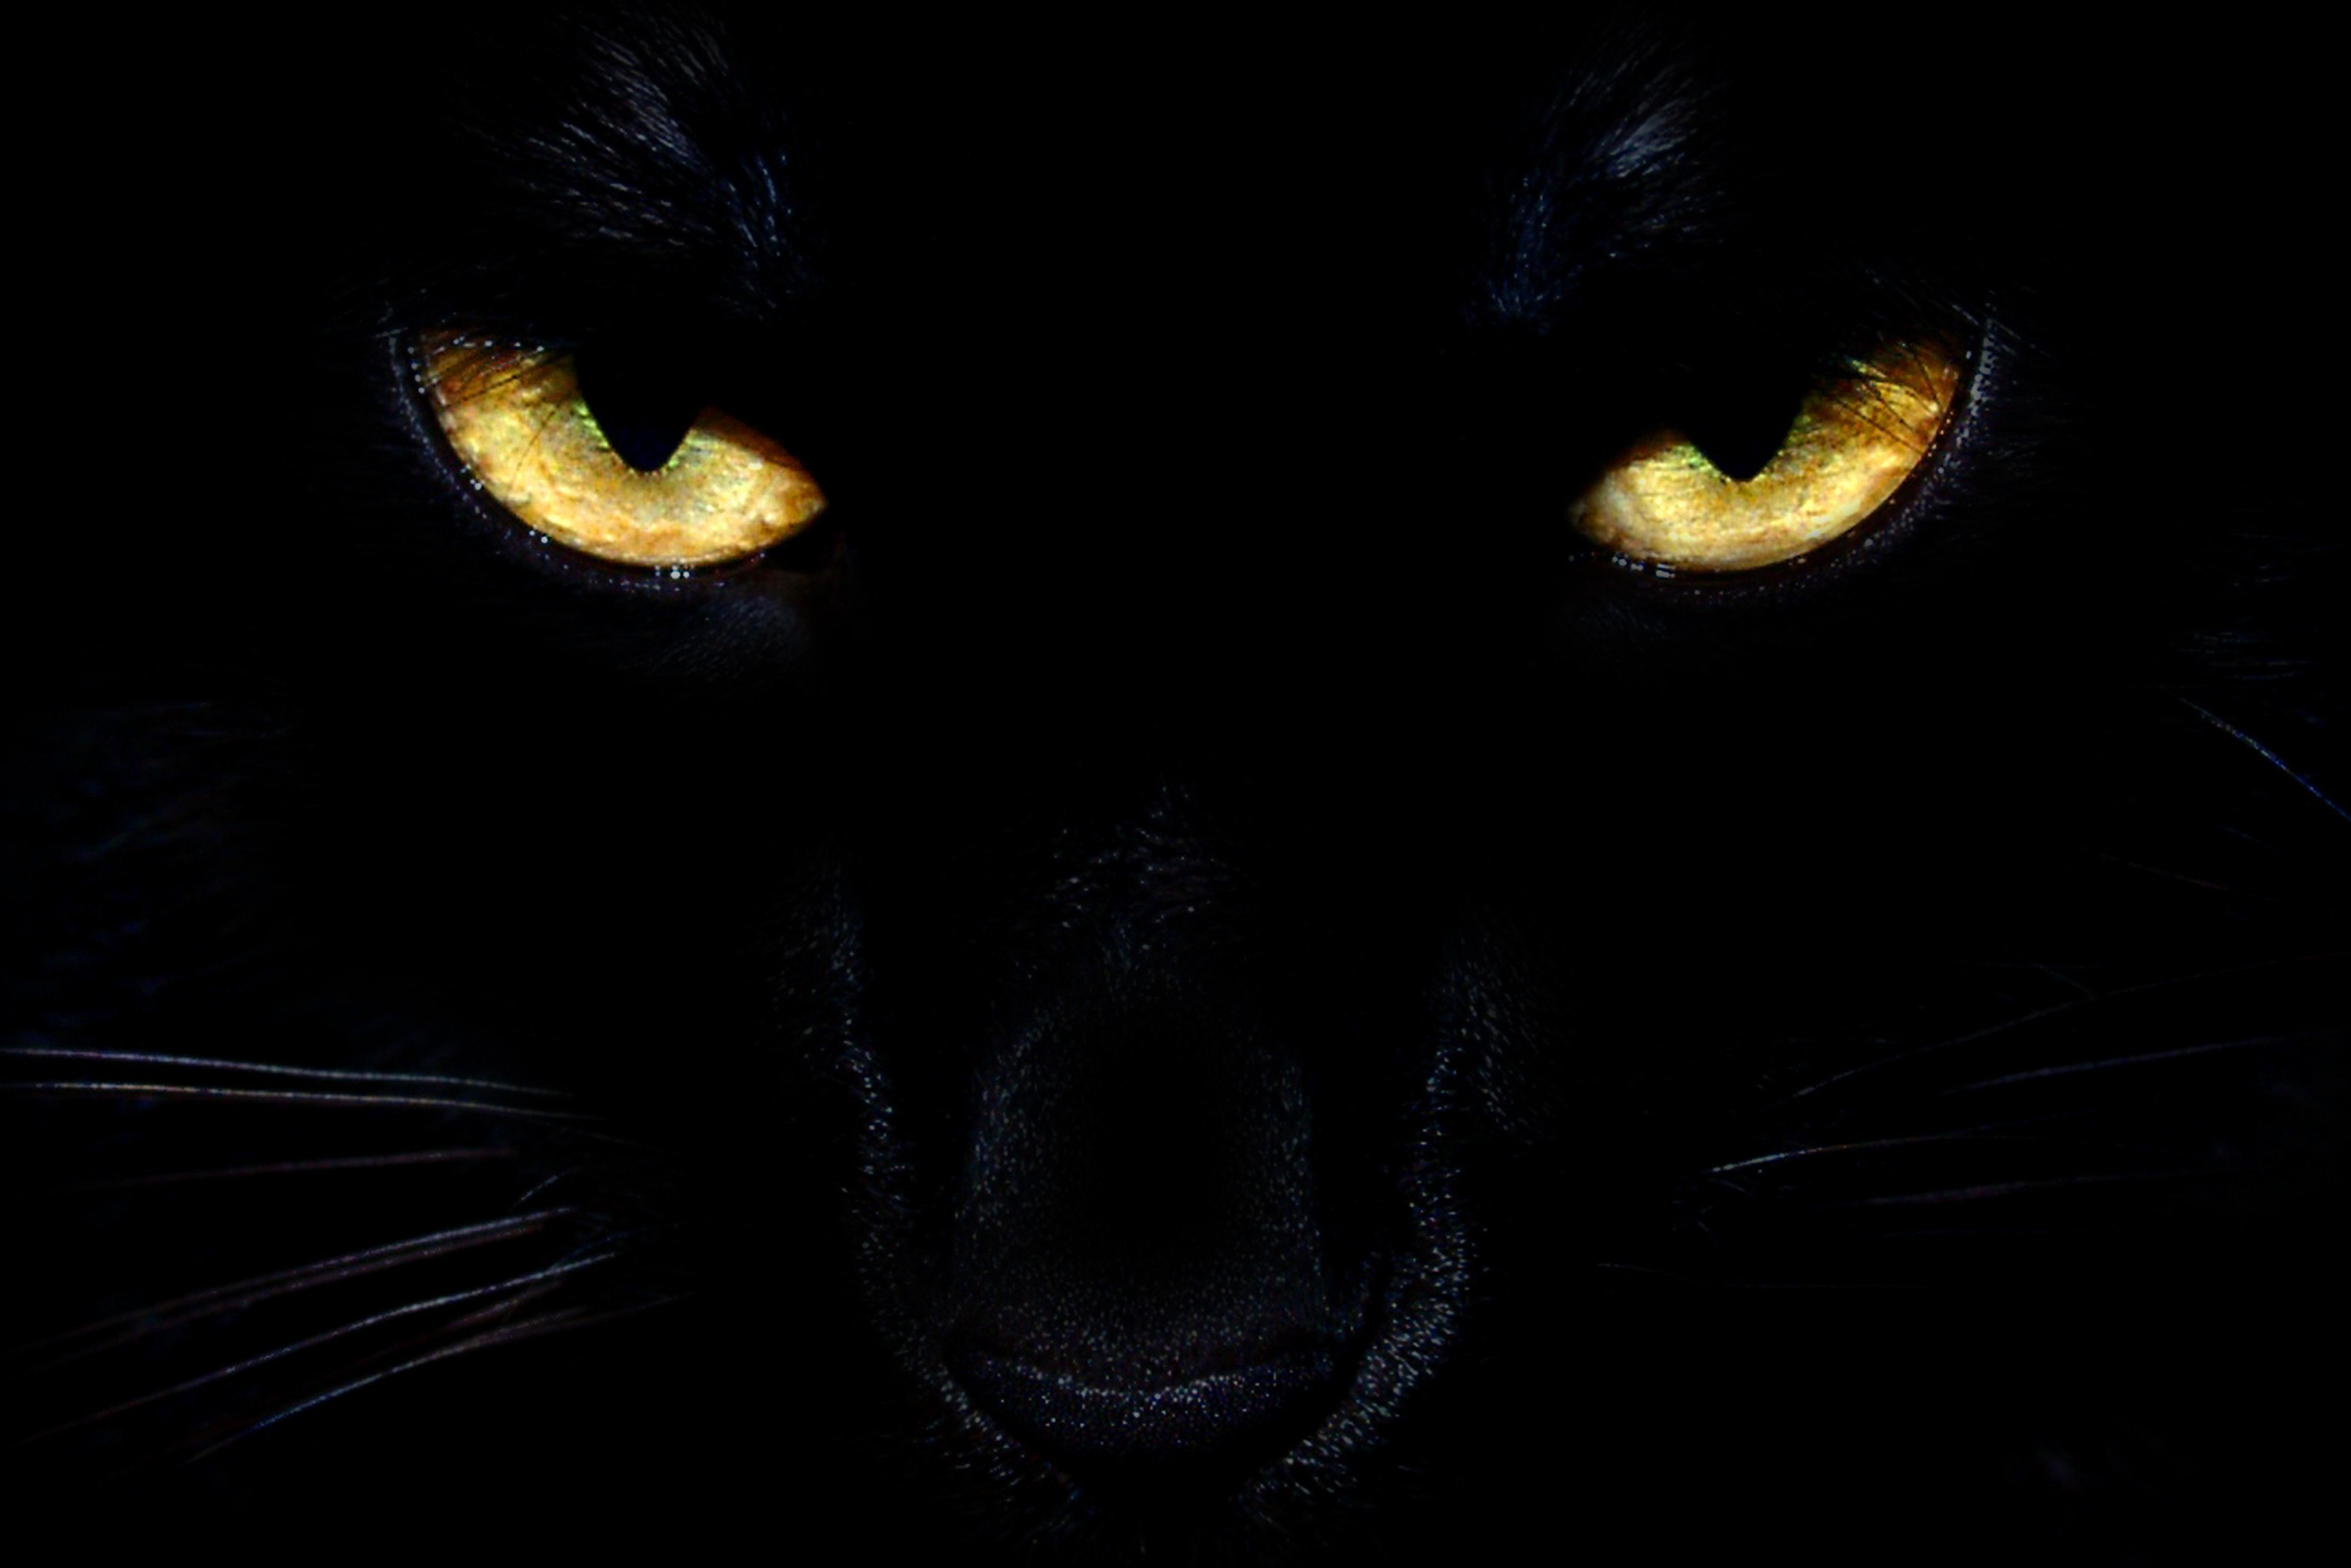 фанфик глаза пантеры светятся в ночи фото 109